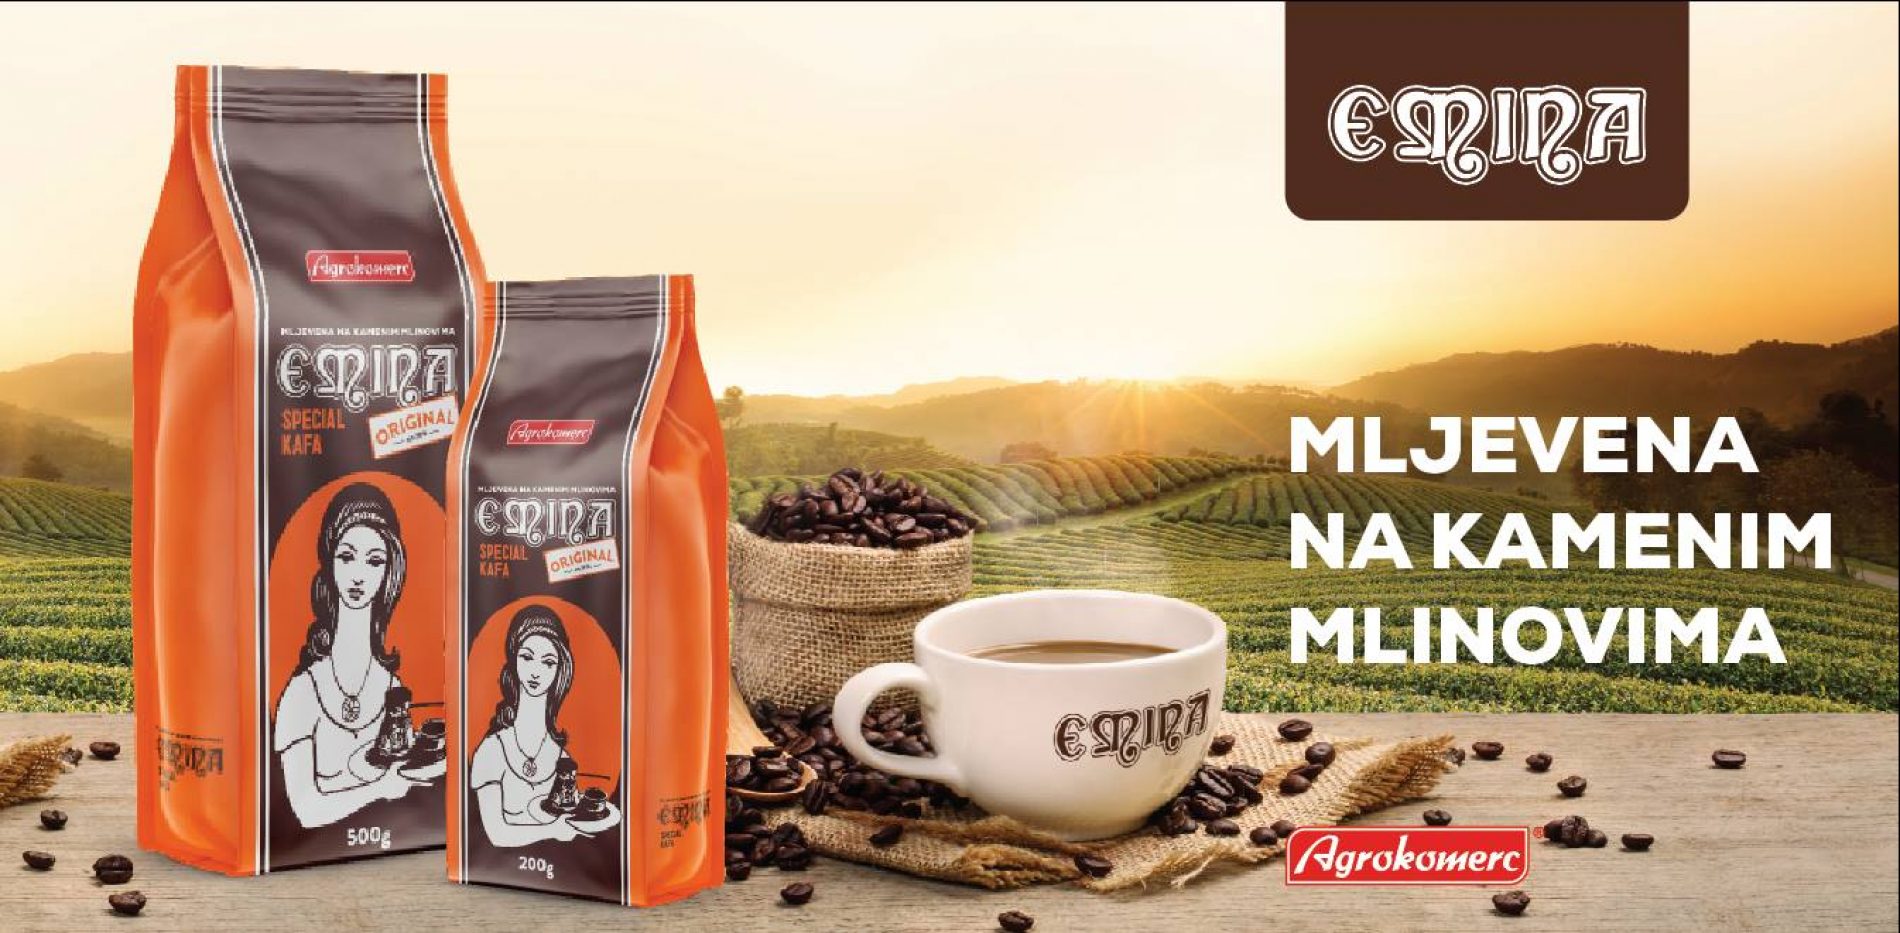 Agrokomercova kafa koja se melje u kamenim mlinovima ponovo na tržištu